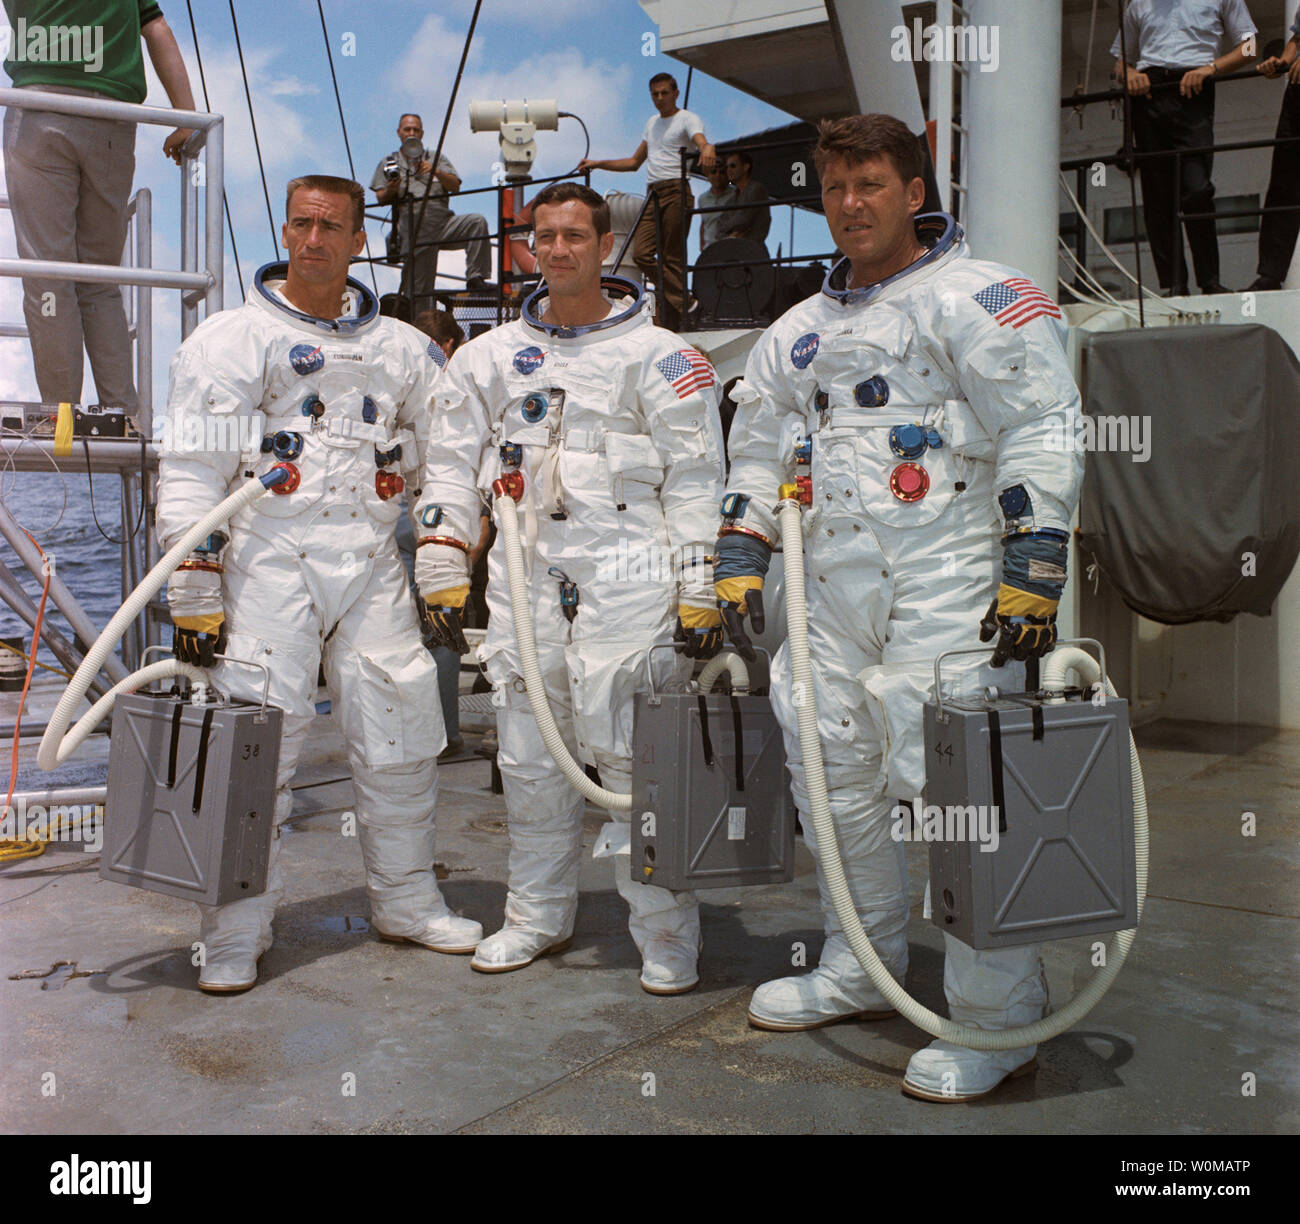 L'astronaute Wally Schirra, un l'original Mercure sept astronautes, est décédé à l'âge de 84 ans à San Diego le 2 mai 2007. Schirra était le seul astronaute à voler dans le Mercury, Gemini et Apollo programmes spatiaux. Il est illustré à droite avec Apollo 7 membres d'équipage Donn Eisele (C) et Walter Cunningham (L) en 1967. (Photos d'UPI/NASA/files) Banque D'Images